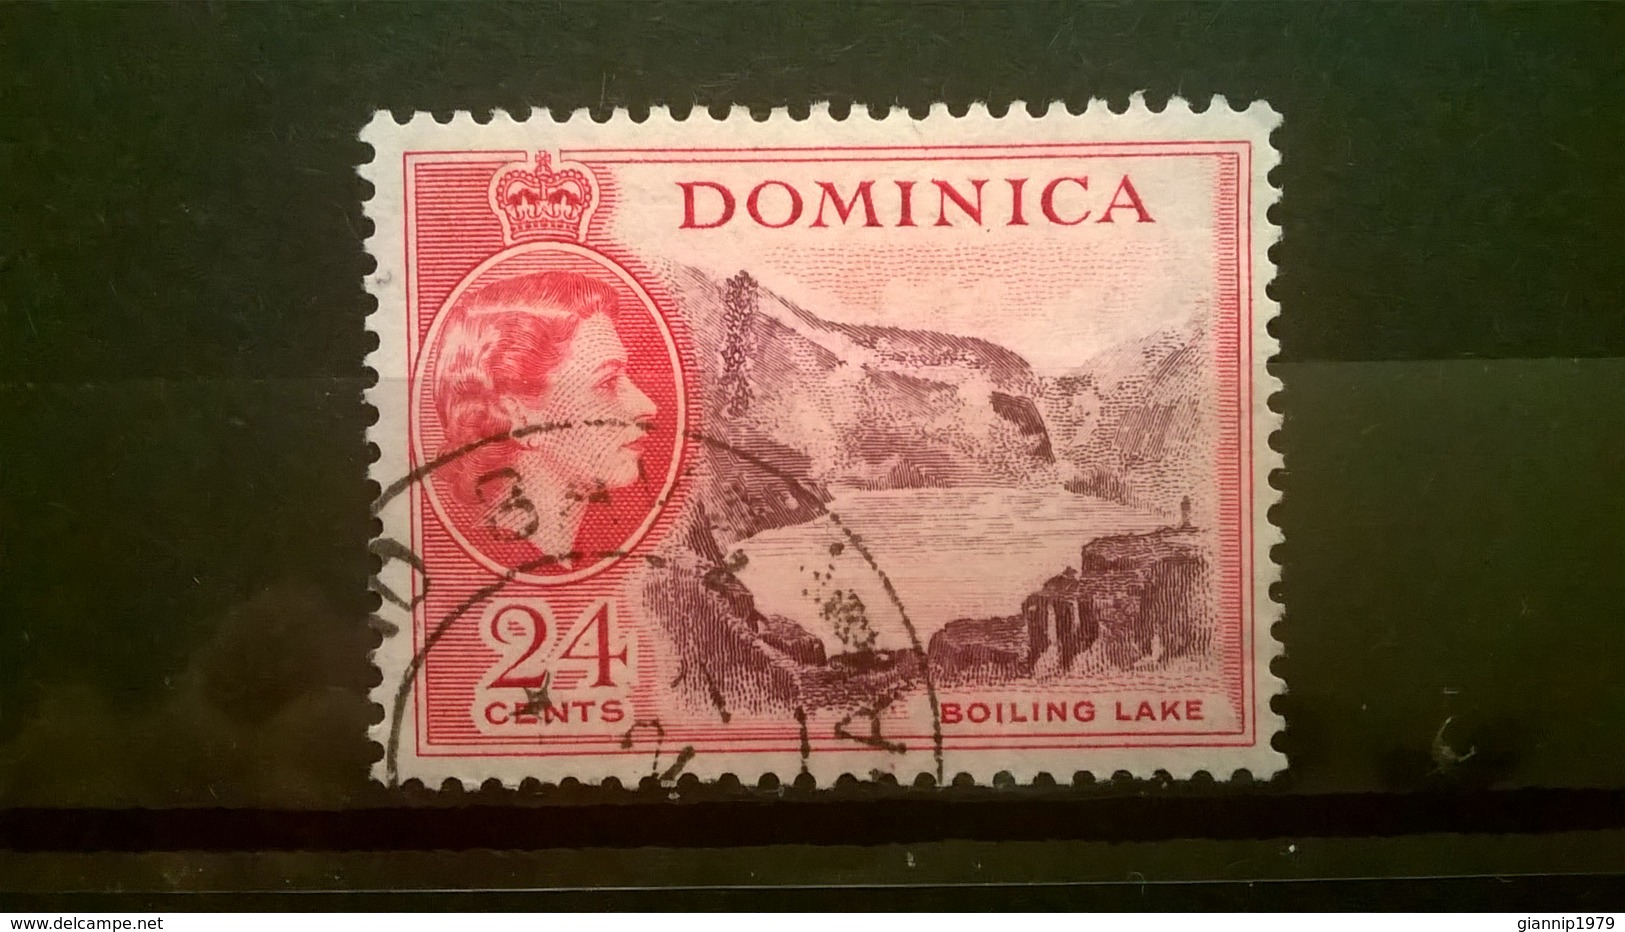 FRANCOBOLLI STAMPS DOMINICA 1954 USED SERIE QUEEN ELIZABETH II REGINA ELISABETTA II - Dominica (1978-...)